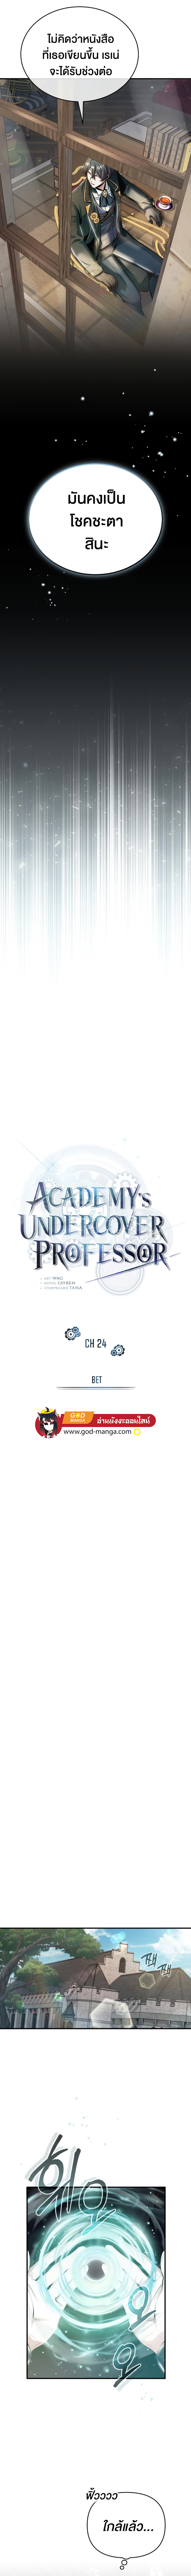 Academy’s Undercover Professor24 03